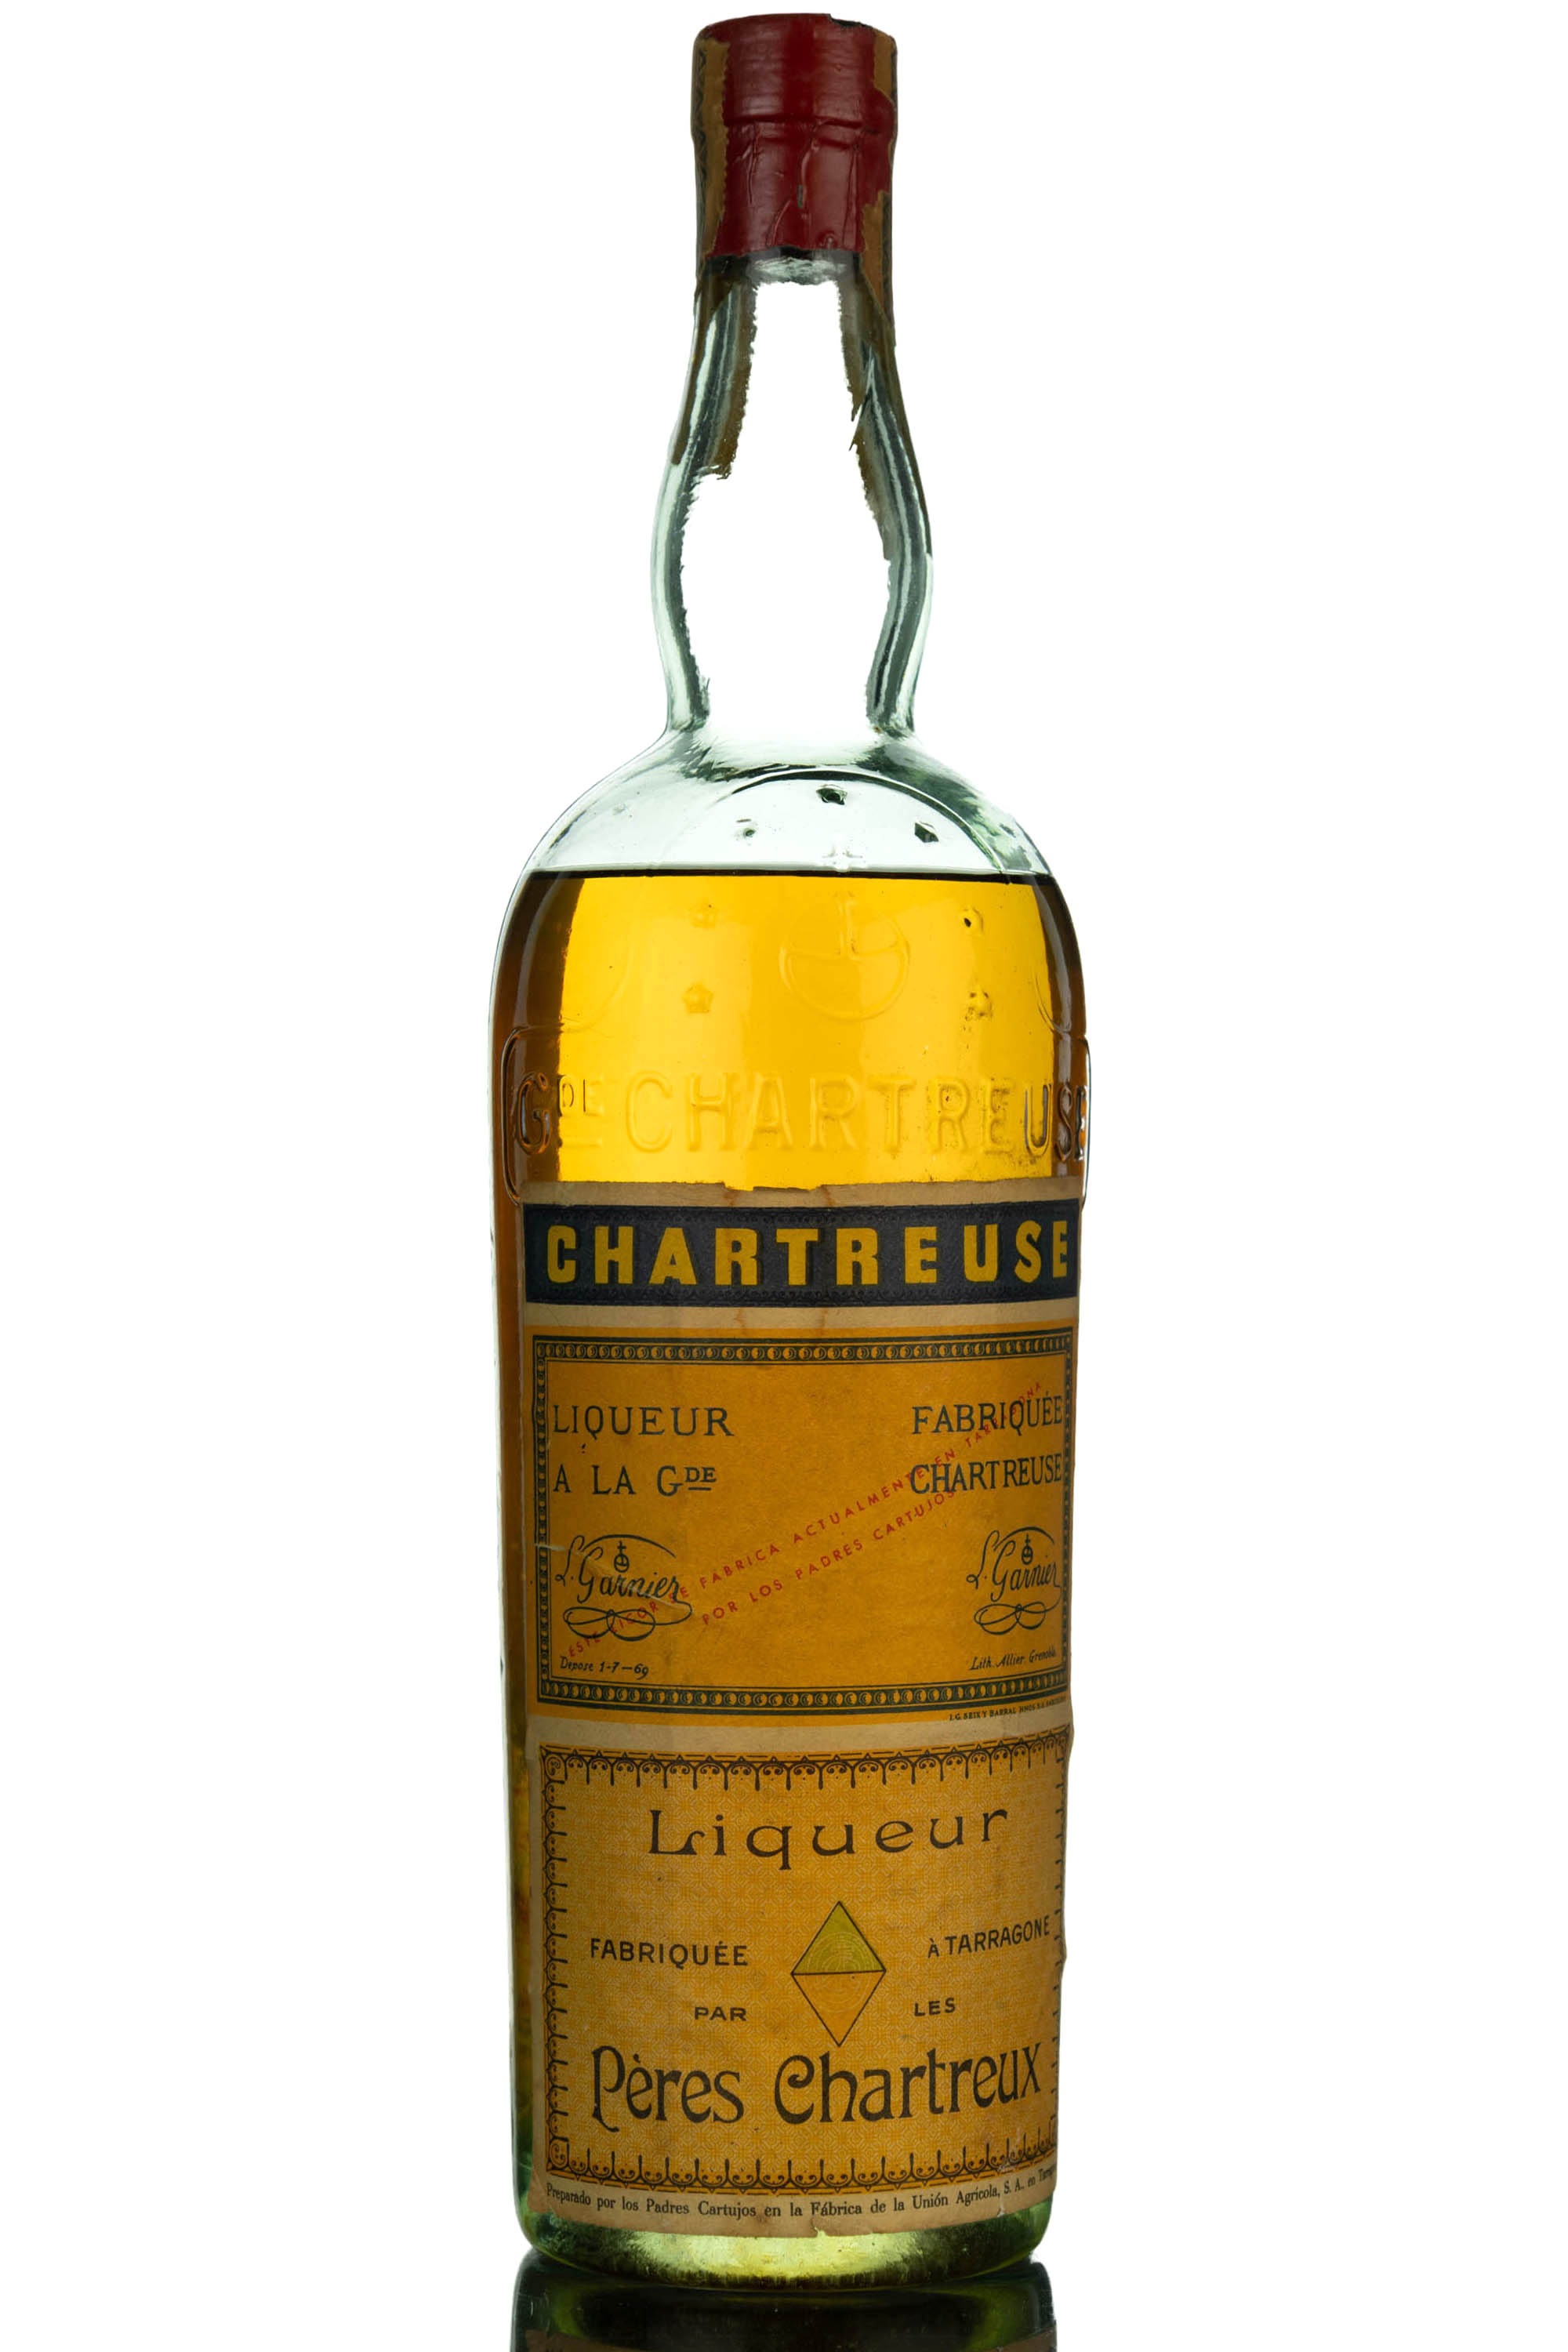 Chartreuse Liqueur Peres Chartreux - 1950s